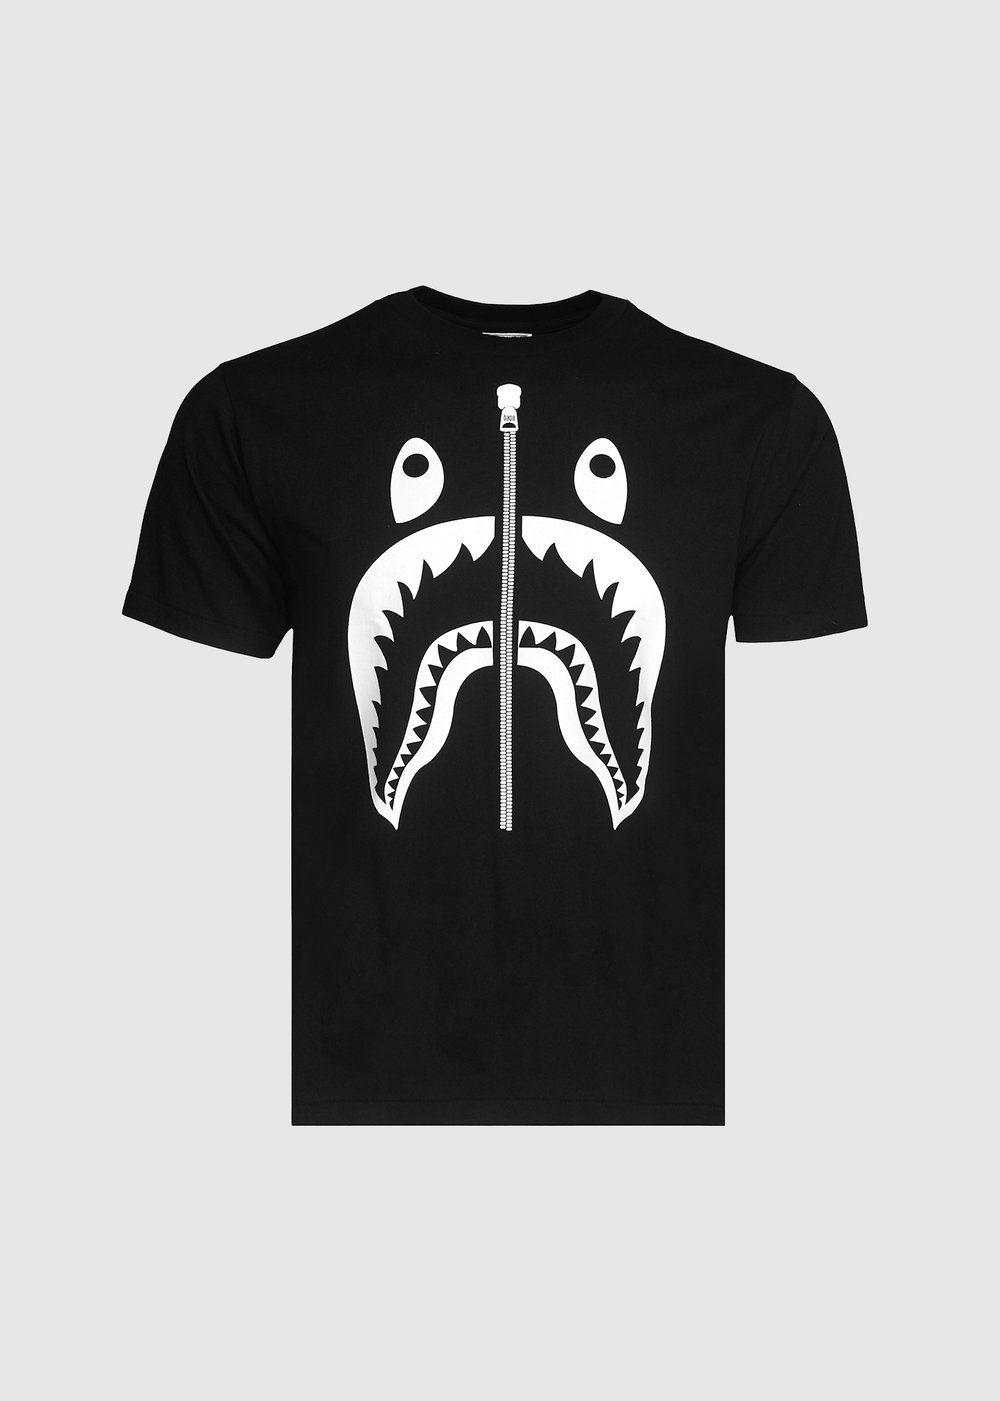 BAPE Black Logo - Bape: Zipper Shark Tee [Black] – Social Status